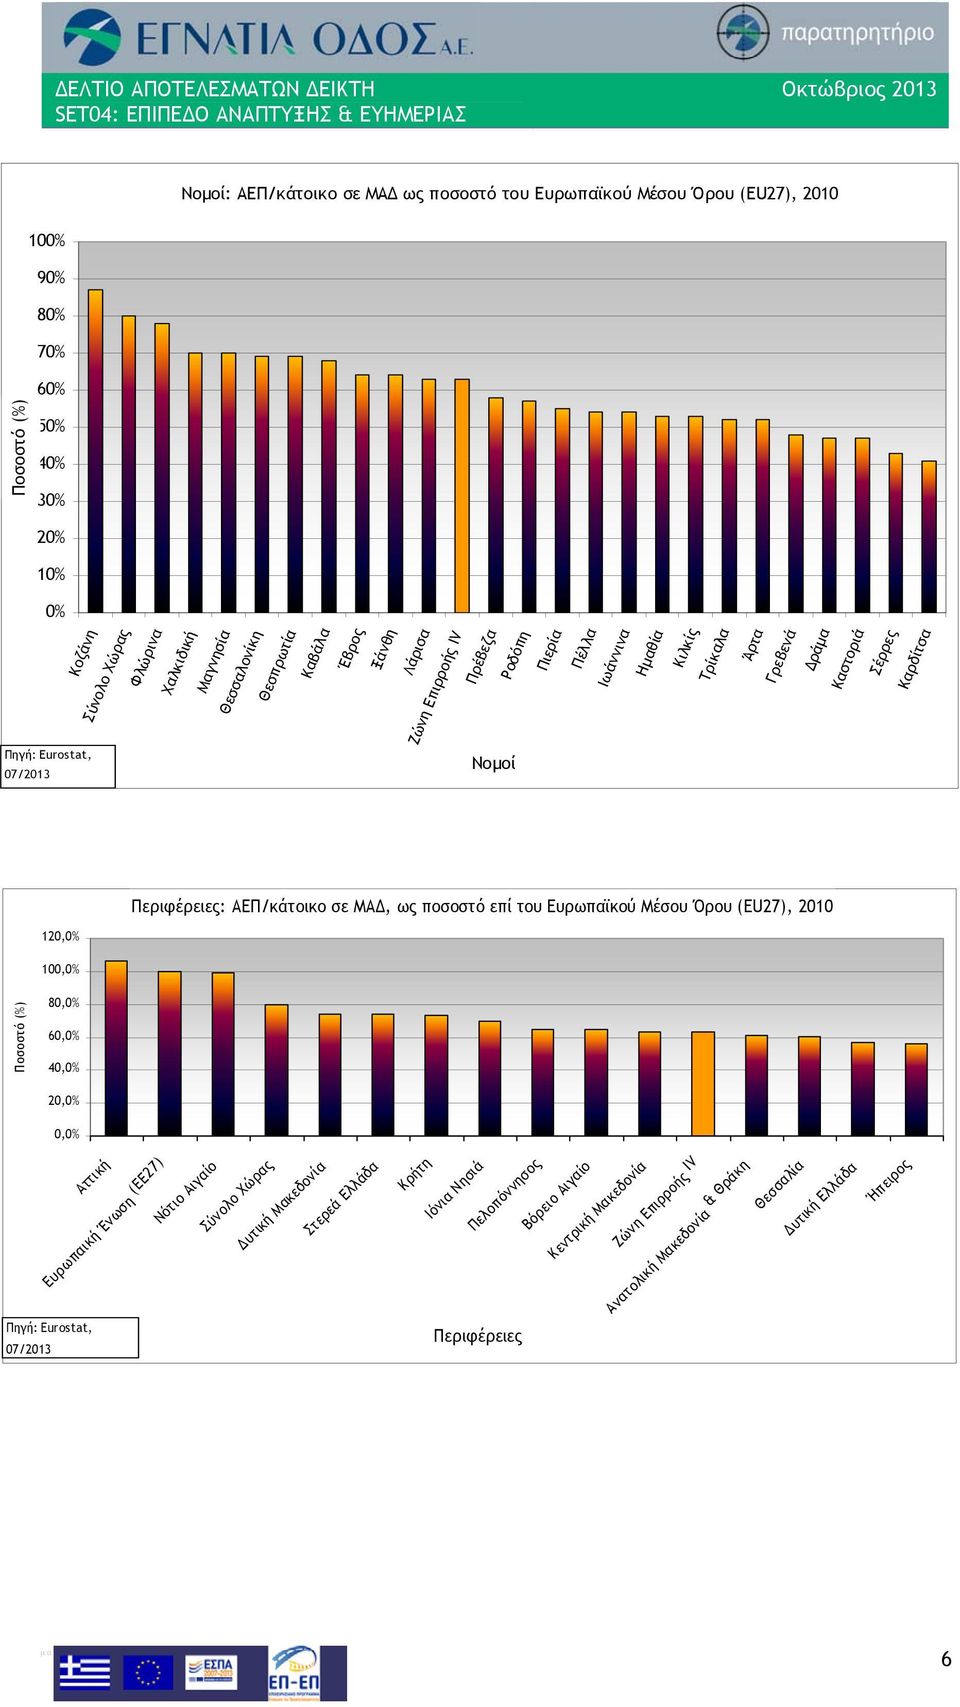 ΑΕΠ/κάτοικο σε ΜΑΔ, ως ποσοστό επί του Ευρωπαϊκού Μέσου Όρου (EU27), 2010 120,0% 100,0% Ποσοστό (%) 80,0% 60,0% 40,0% 20,0% 0,0% Πηγή: Eurostat, 07/2013 Αττική Ευρωπαική Ένωση (ΕΕ27) Νότιο Αιγαίο